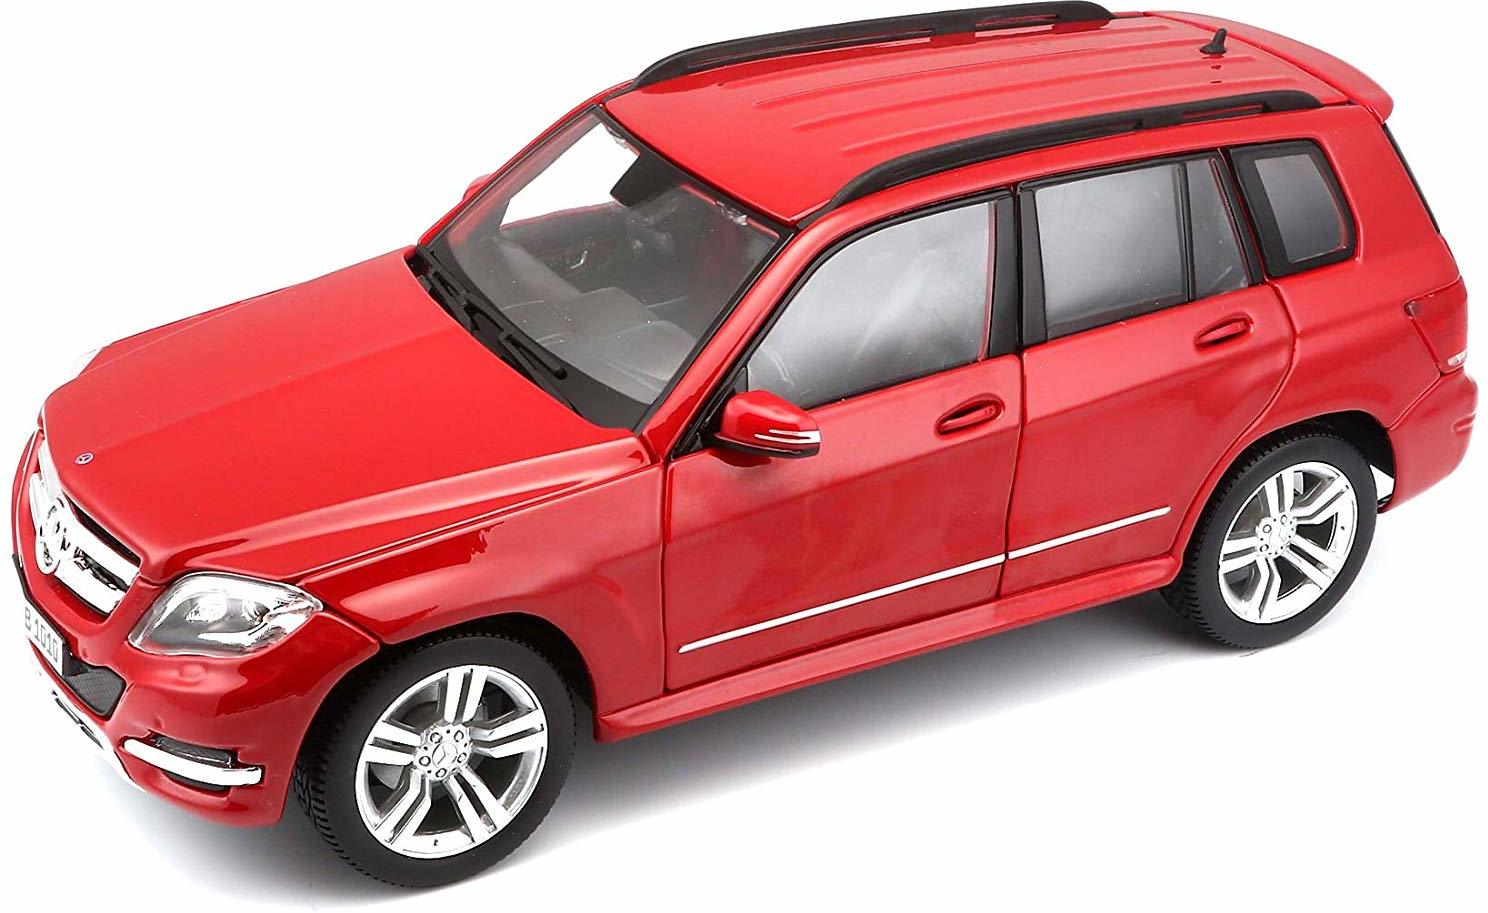 Mercedes GLK, Modellauto mit Federung, Maßstab 1:18, Türen und Motorhaube beweglich, Fertigmodell, lenkbar, 24 cm, rot